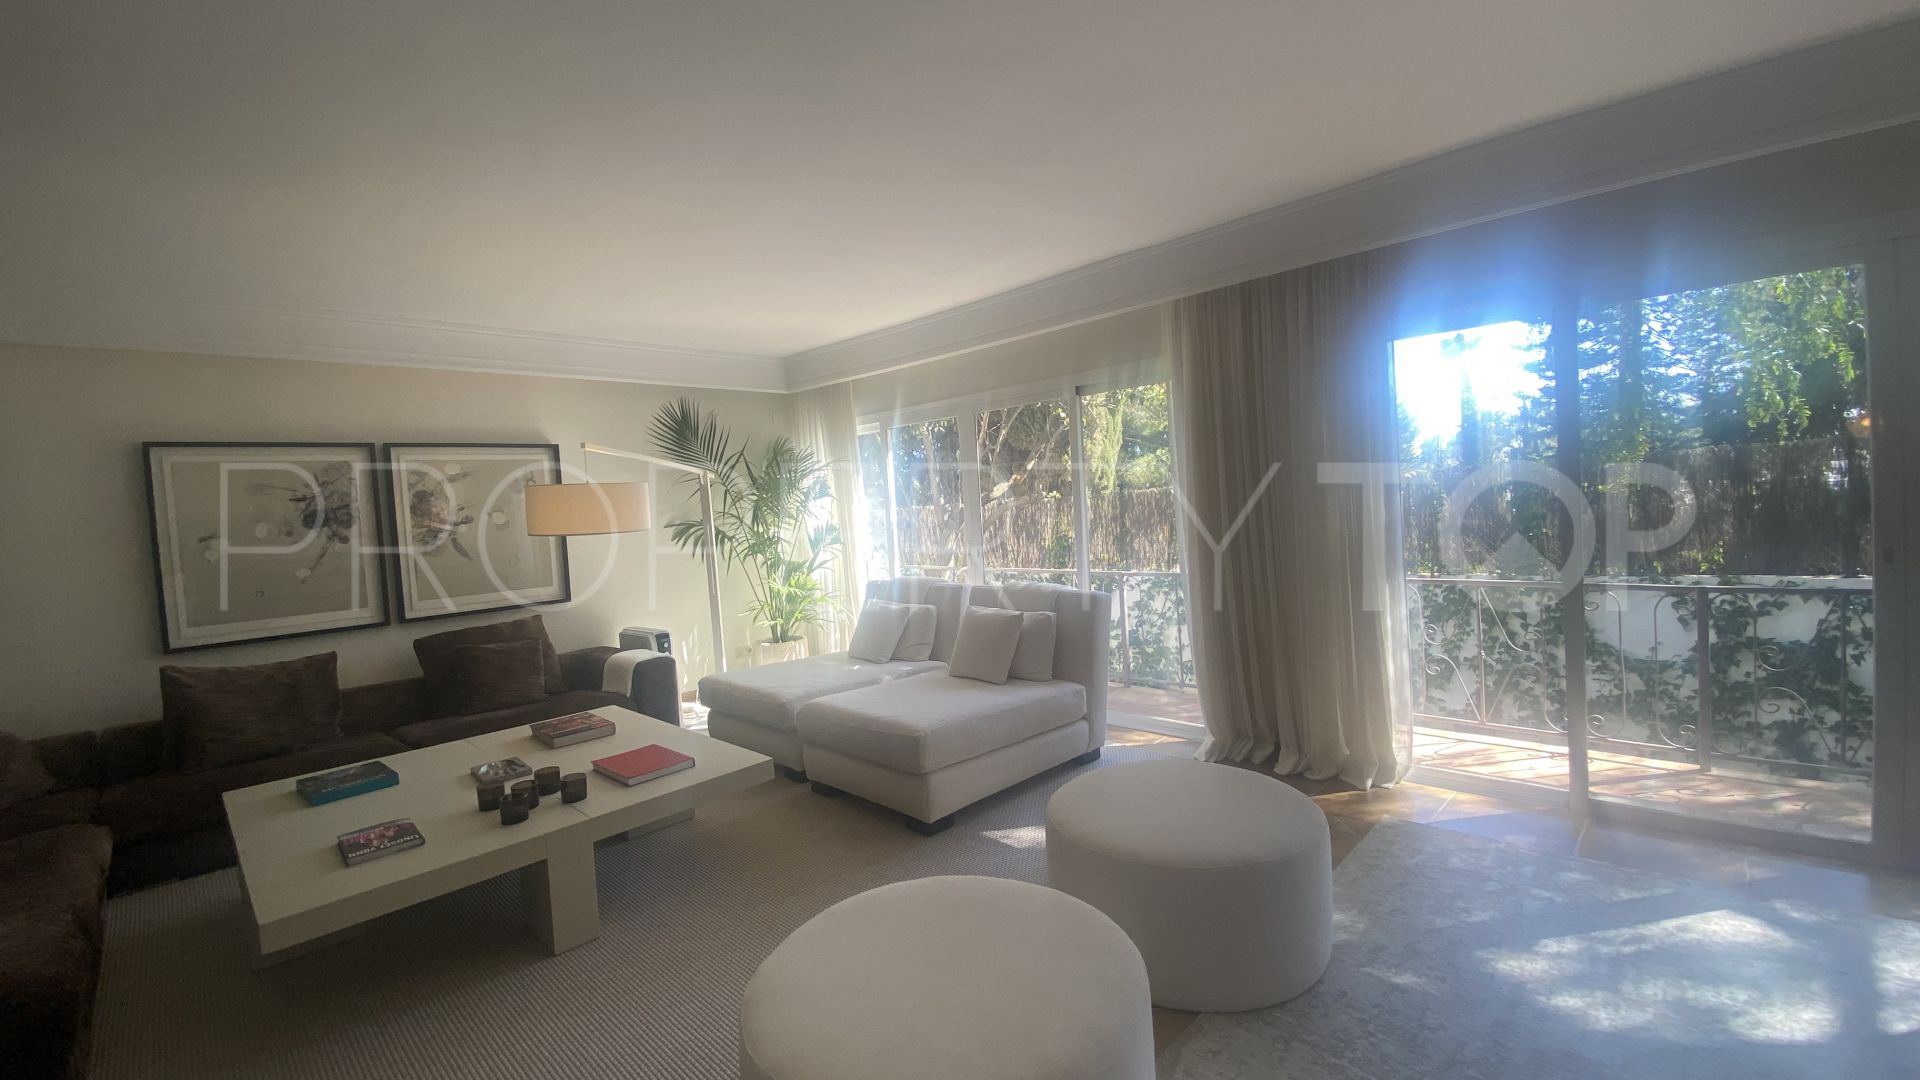 5 bedrooms Rocio de Nagüeles villa for sale